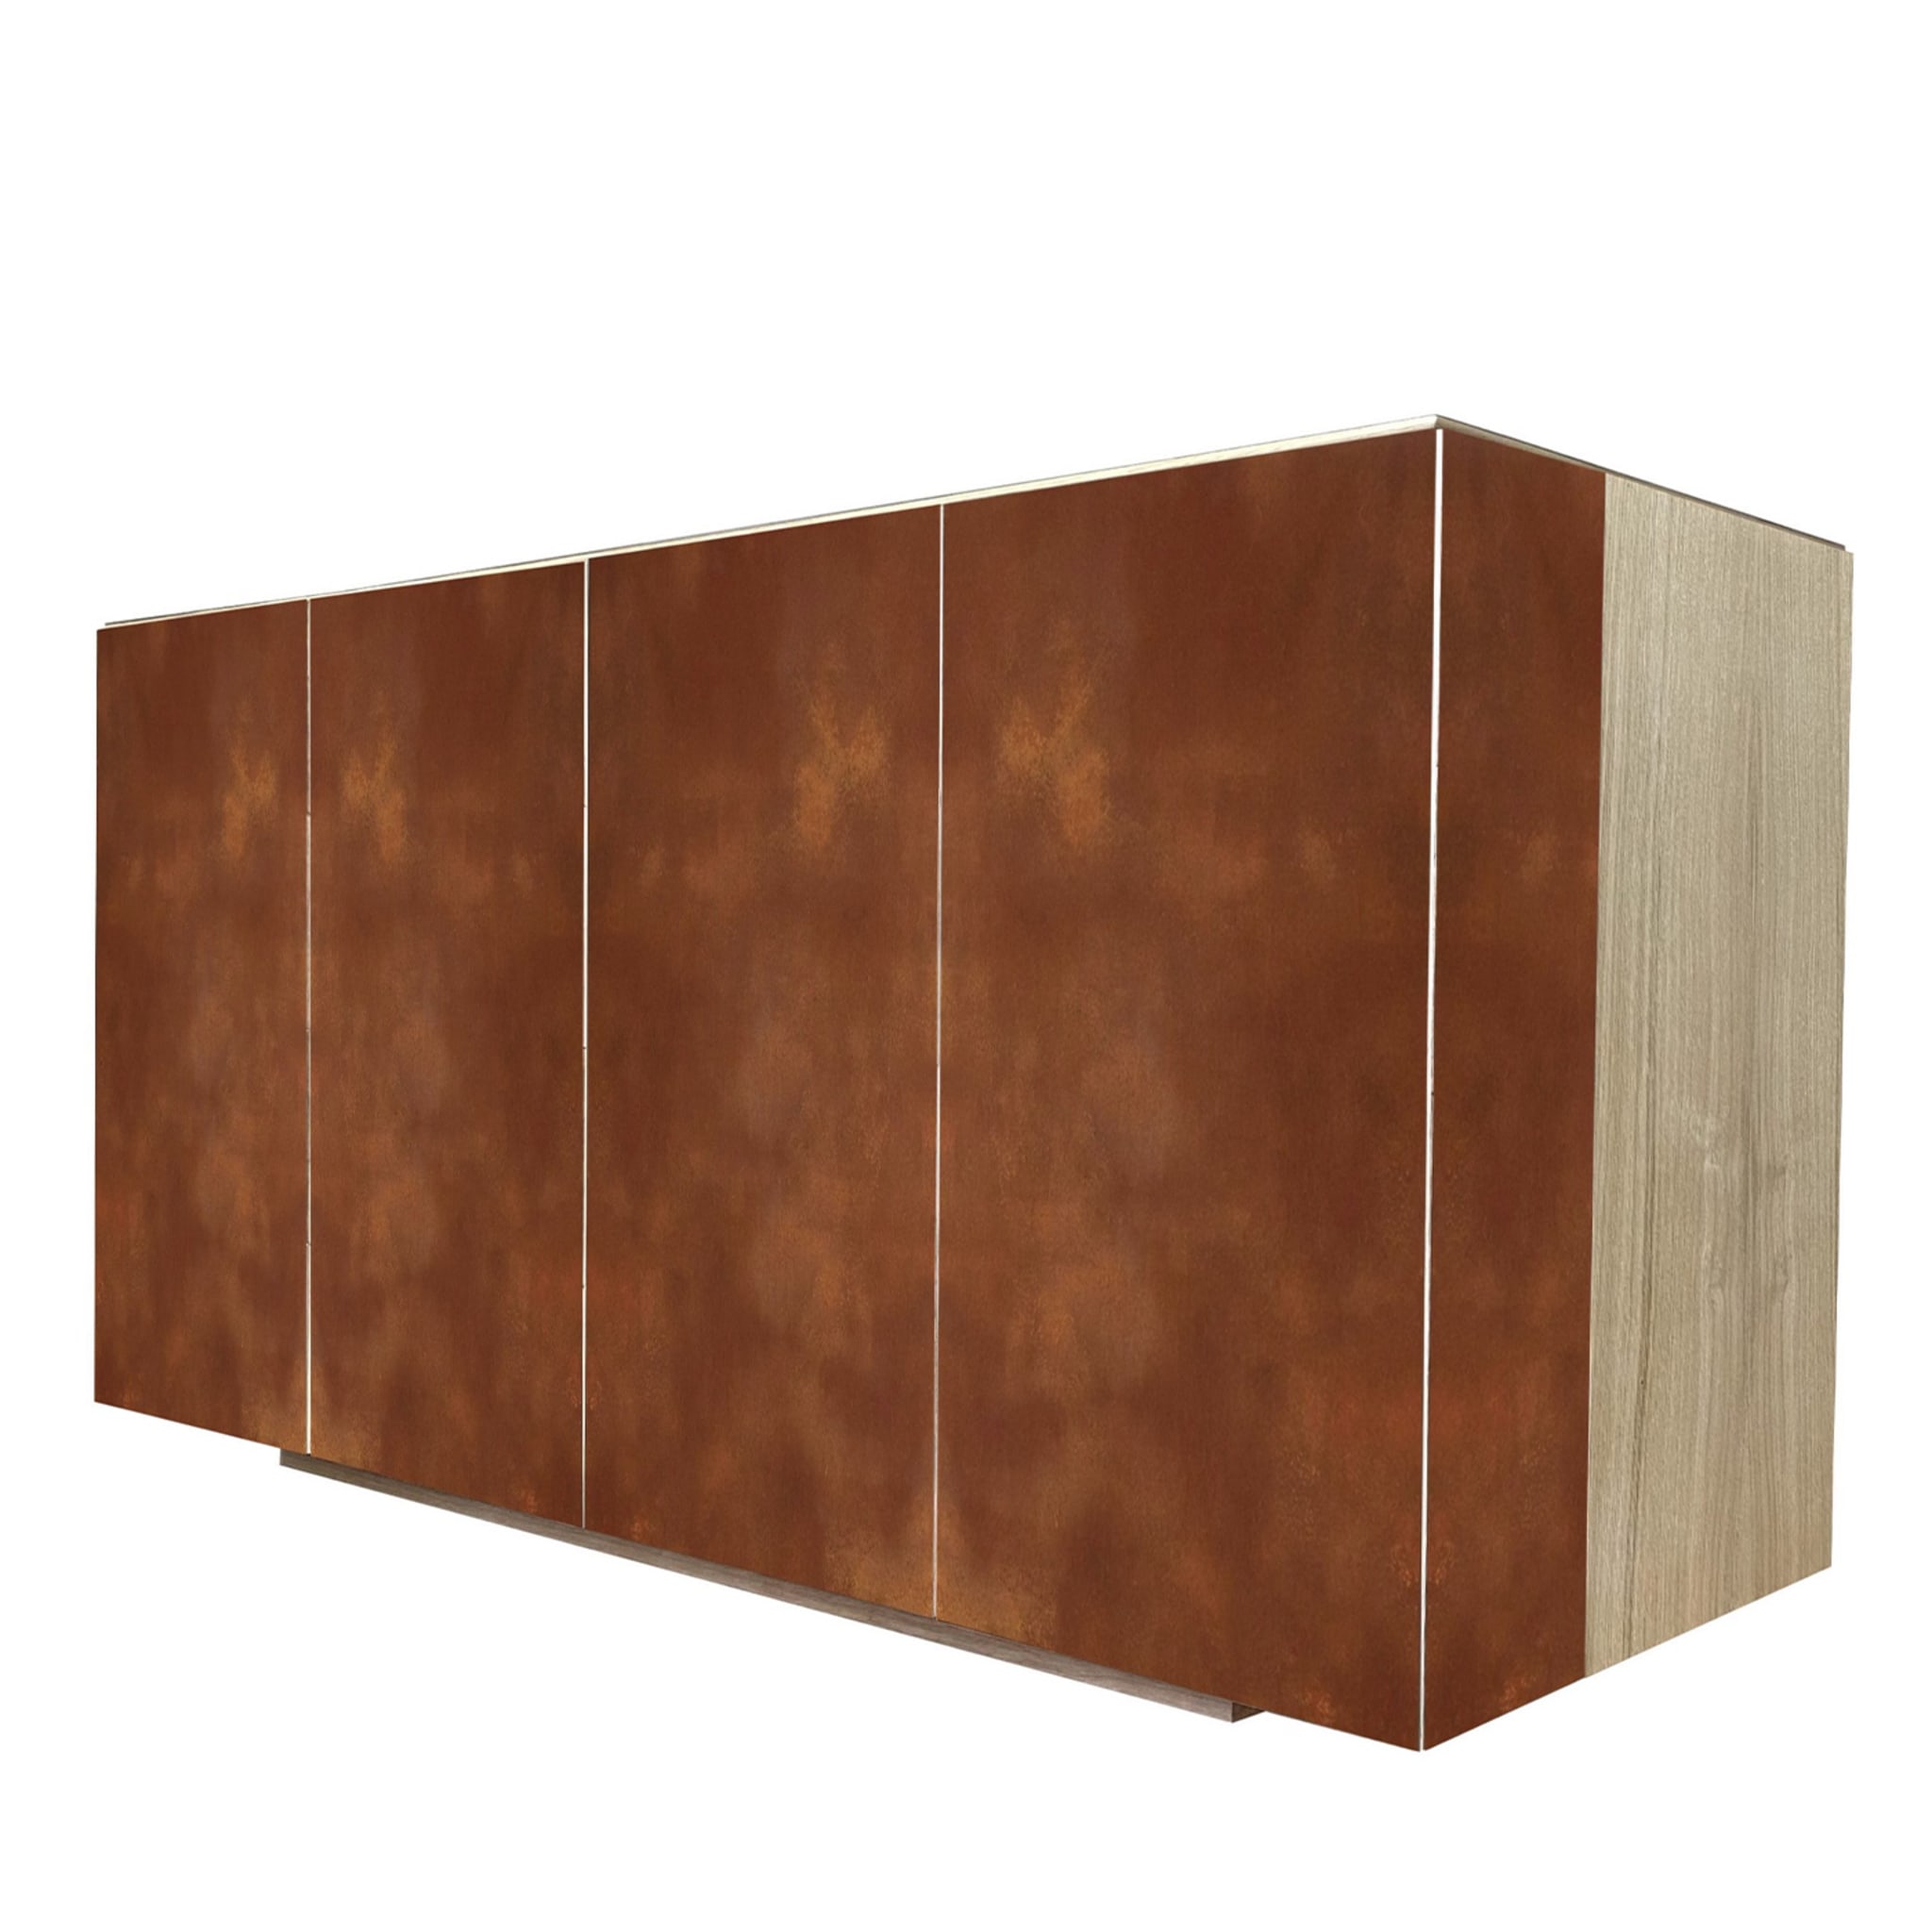 Boccadarno Quattro 4-Door Rust Sideboard by Meccani Studio - Alternative view 1